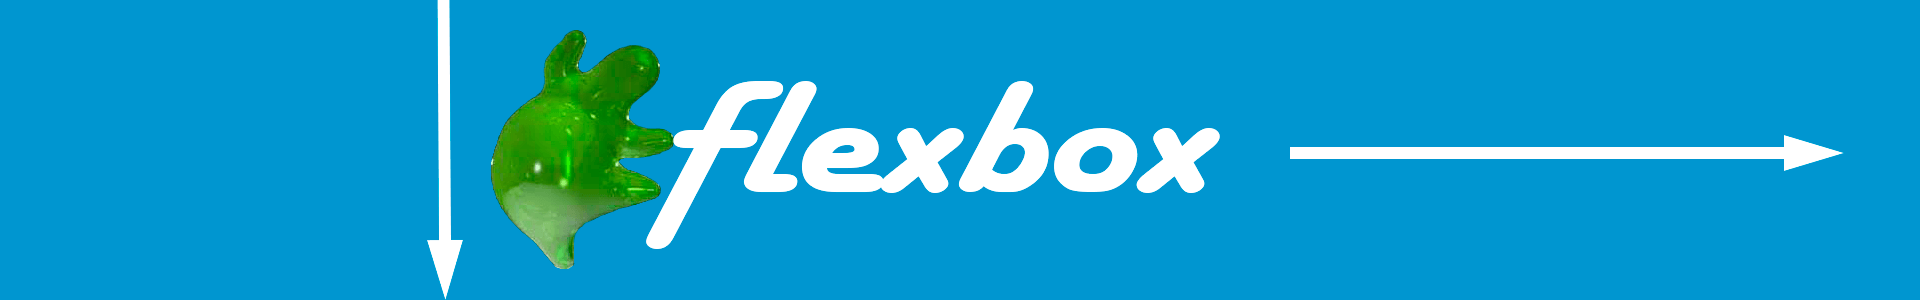 Рис. 203 Изучение flexbox верстки.